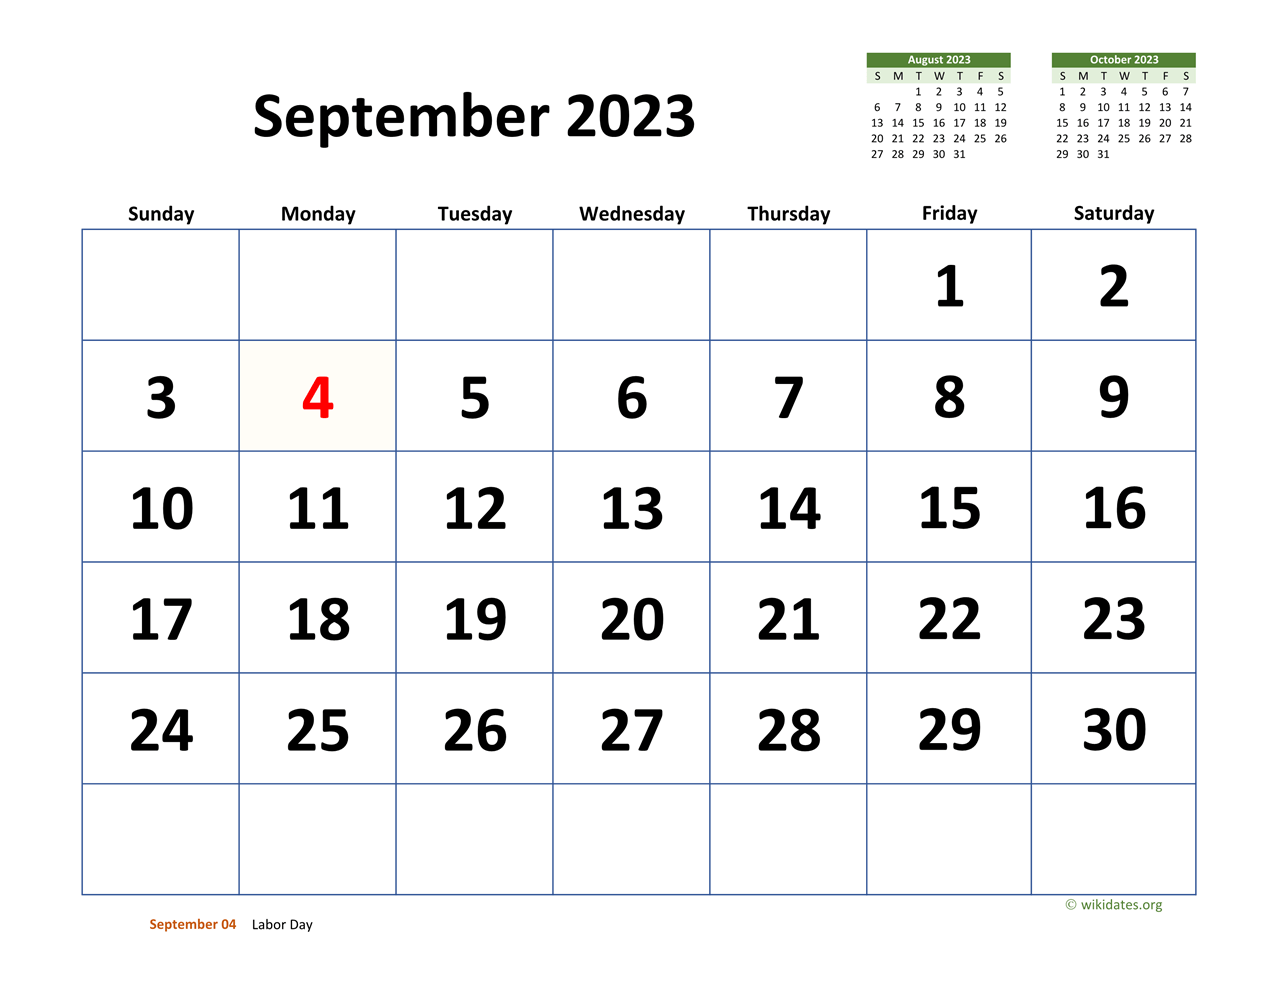 September 2023 Calendar Days Get Latest Map Update